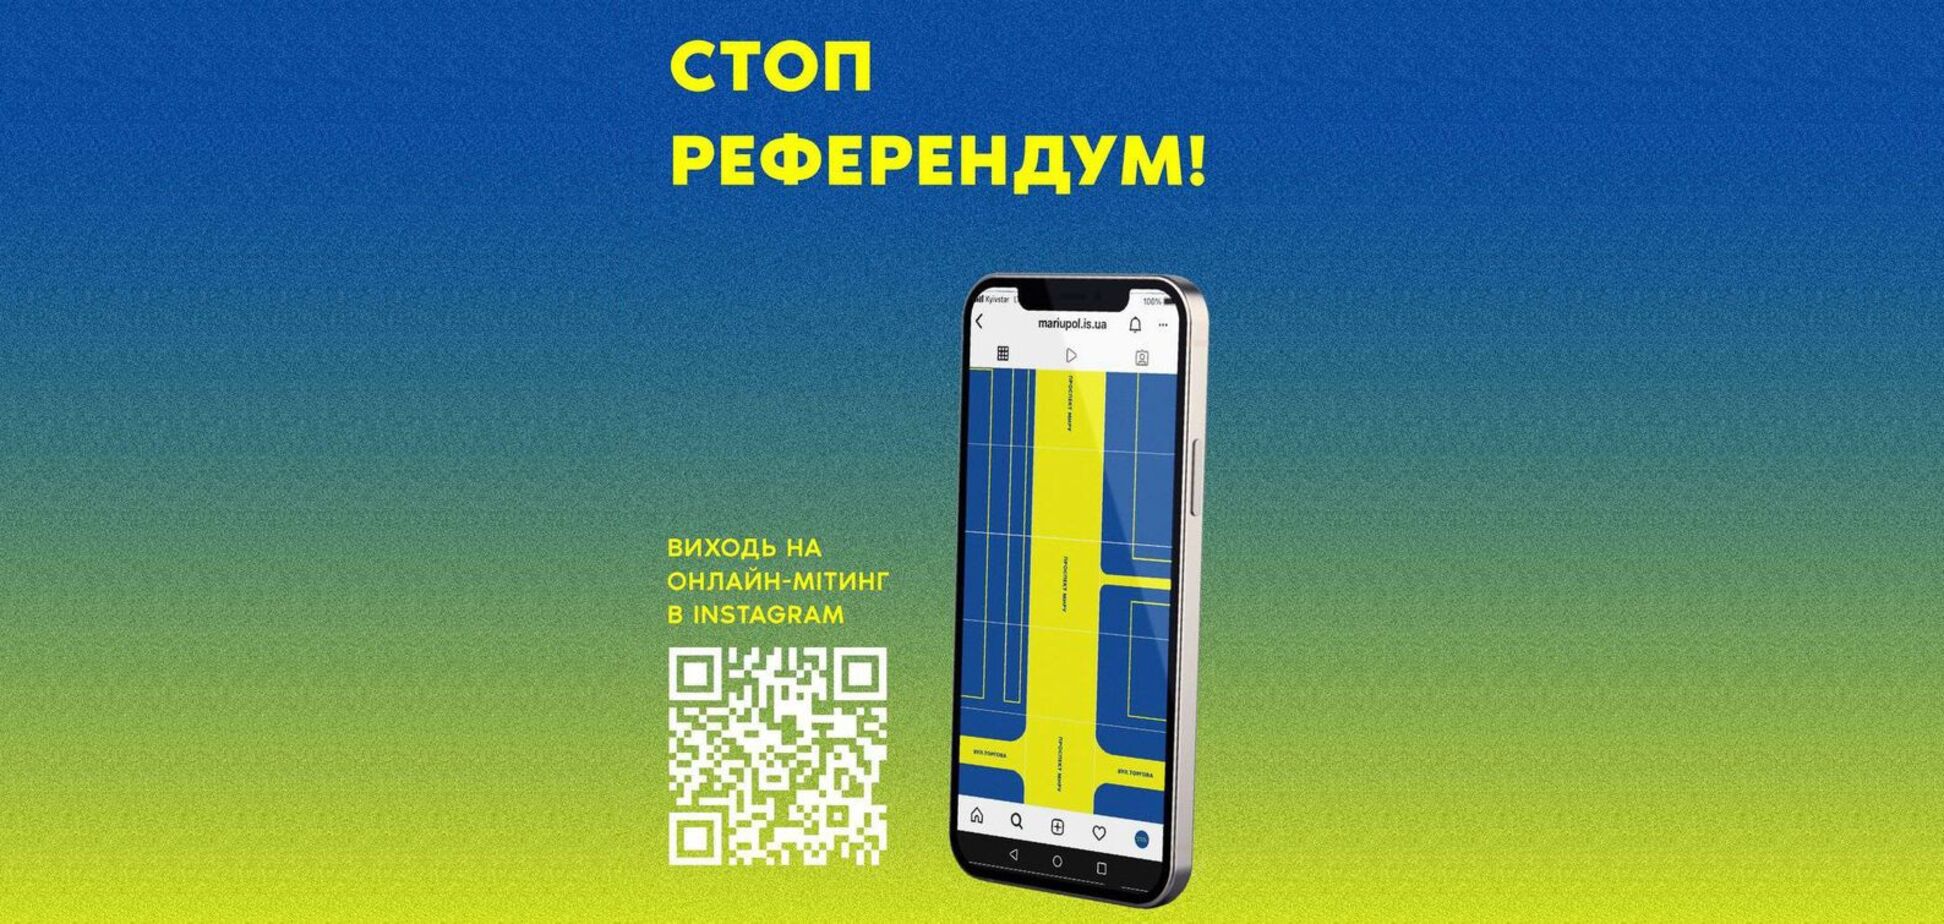 В Украине стартовал онлайн-митинг против псевдореферендума в Мариуполе: как присоединиться